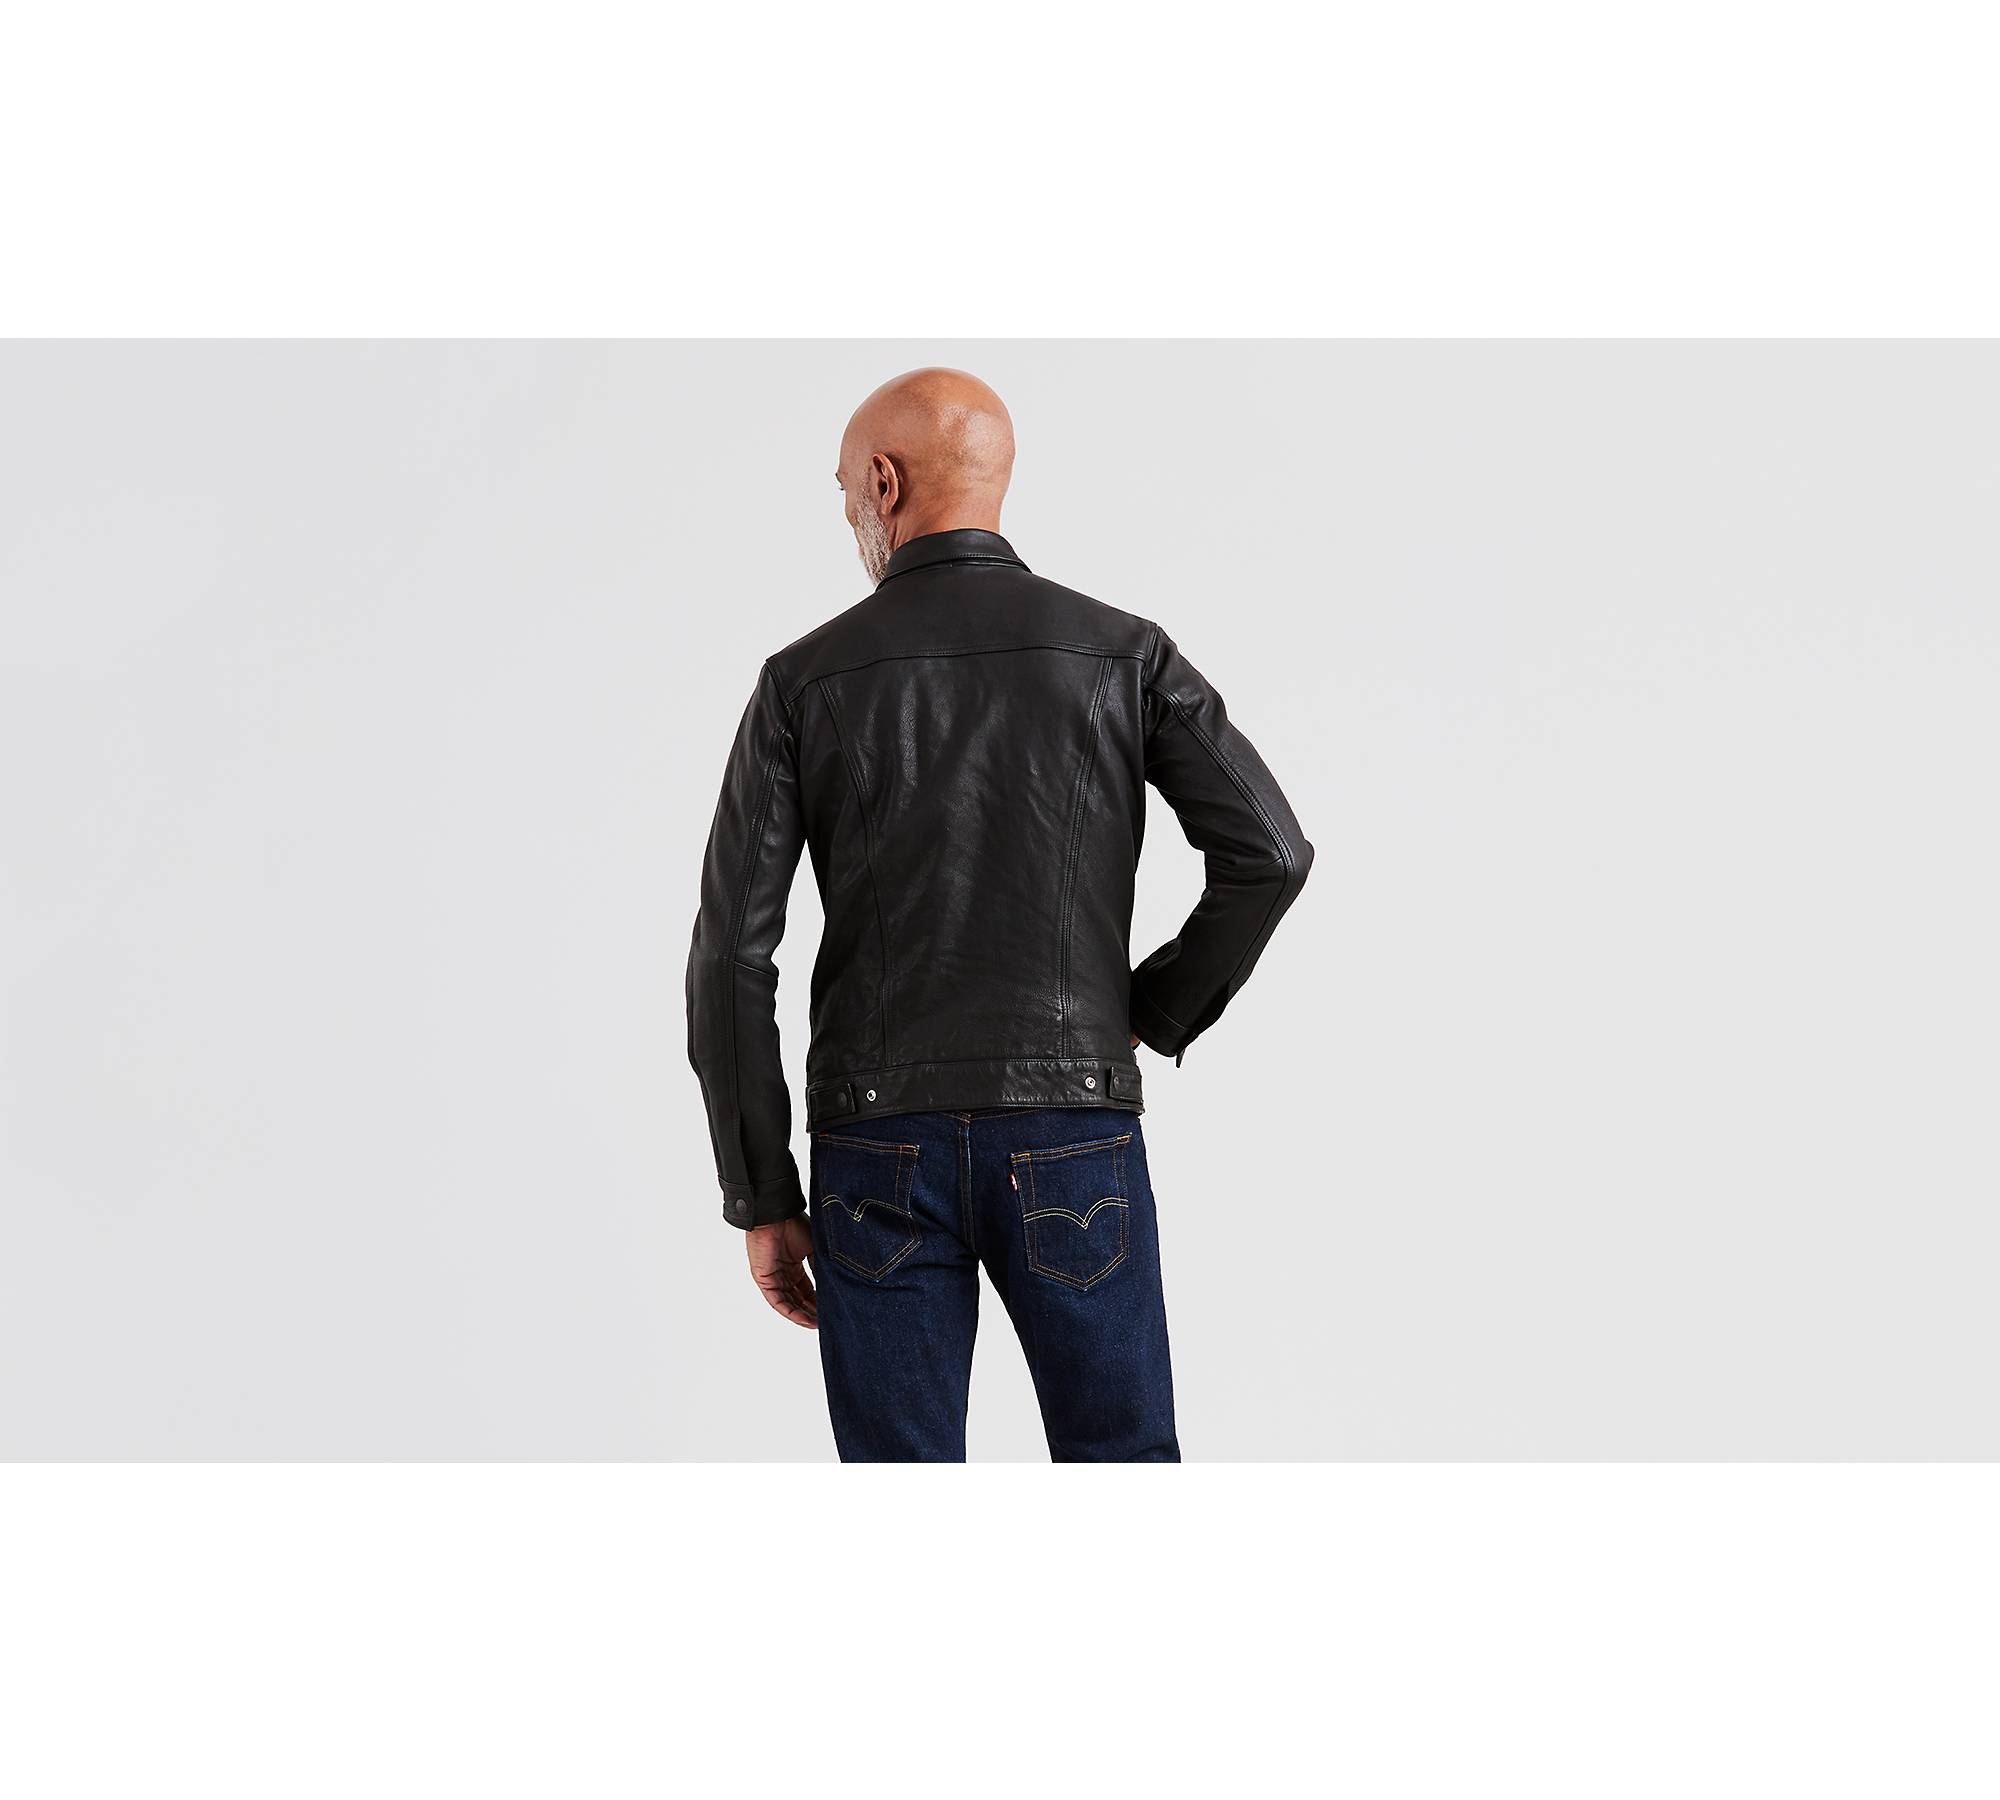 Lvc Levis Vintage Clothing Biker Leather Jacket Leather Cowhide Size M Black